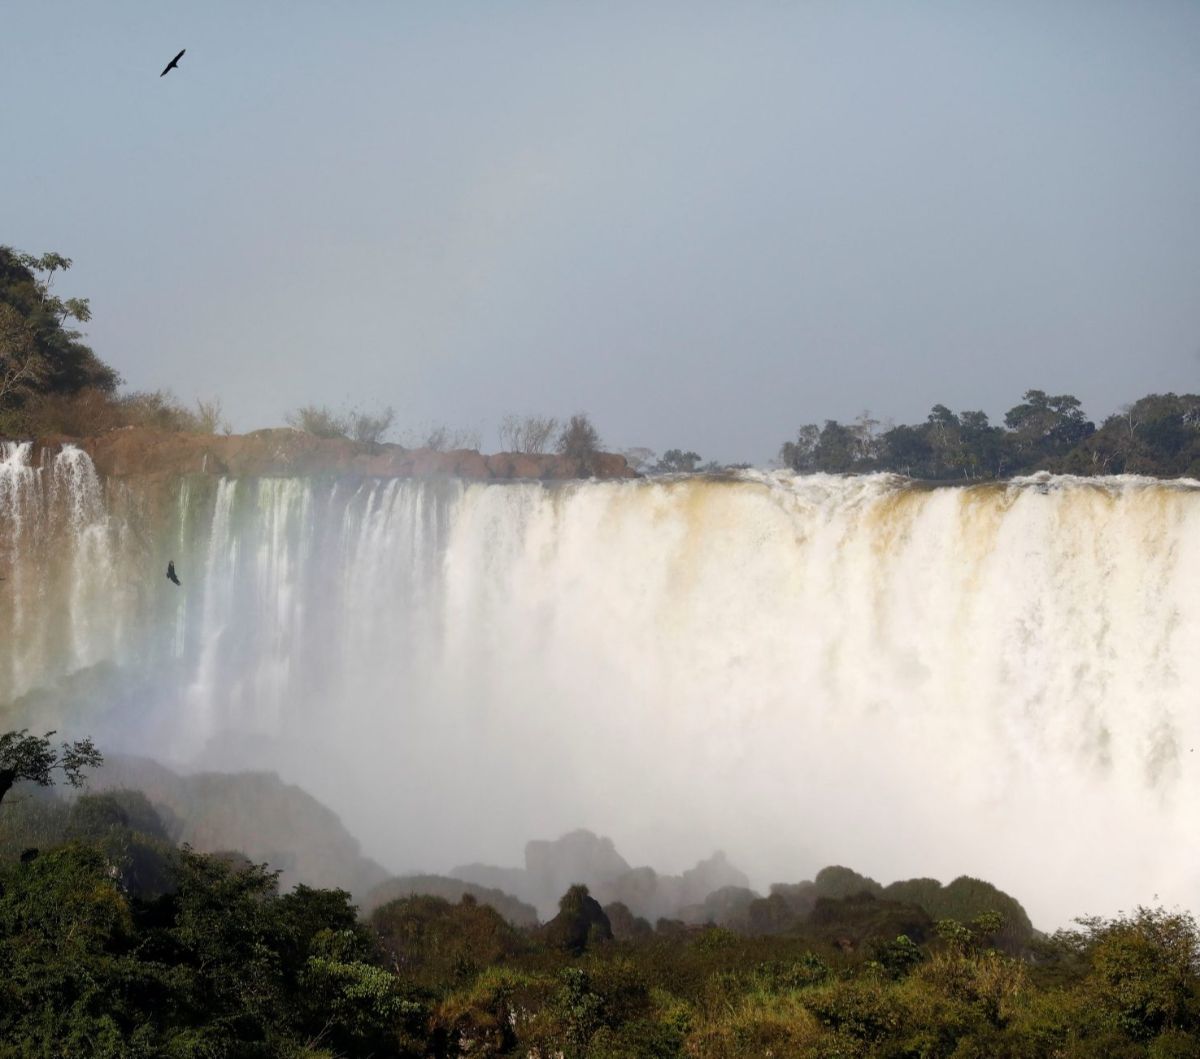 Air terjun ini memiliki lebar dan tinggi yang melebihi Air Terjun Niagara. Ketinggian Air Terjun Iguazu mencapai 82 meter. Sedangkan Niagara memiliki tinggi 51 meter.